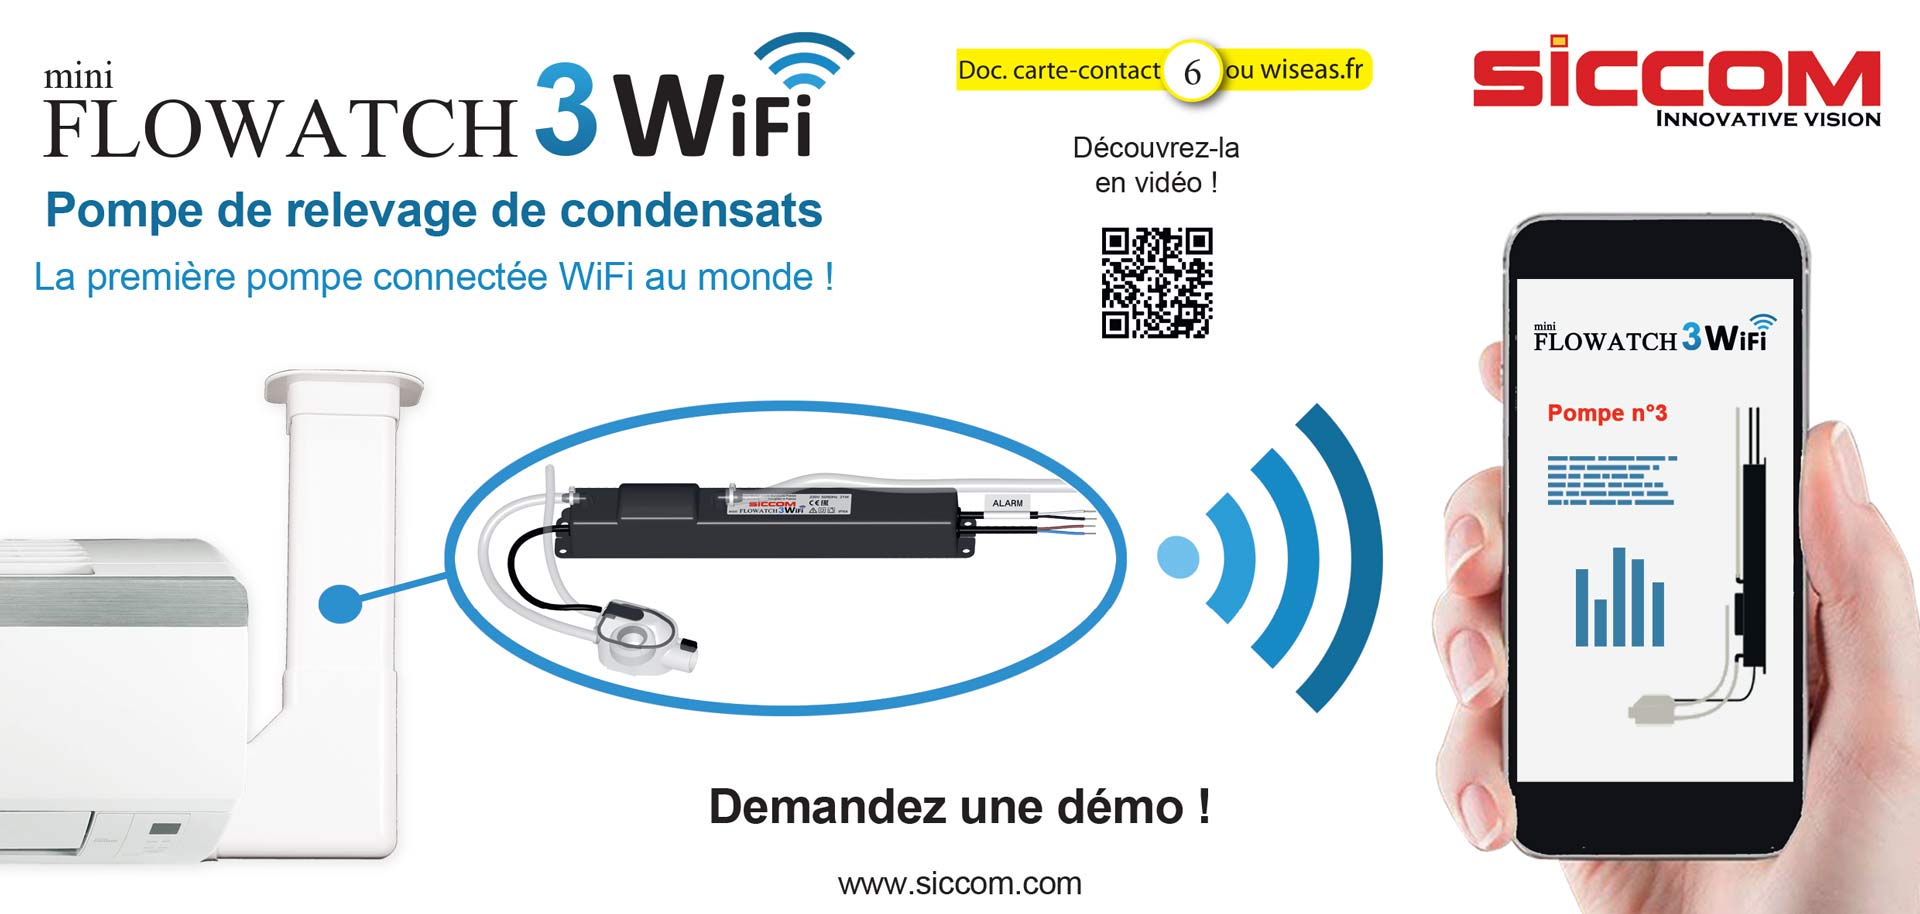 Mini FLOWATCH® 3 WiFi